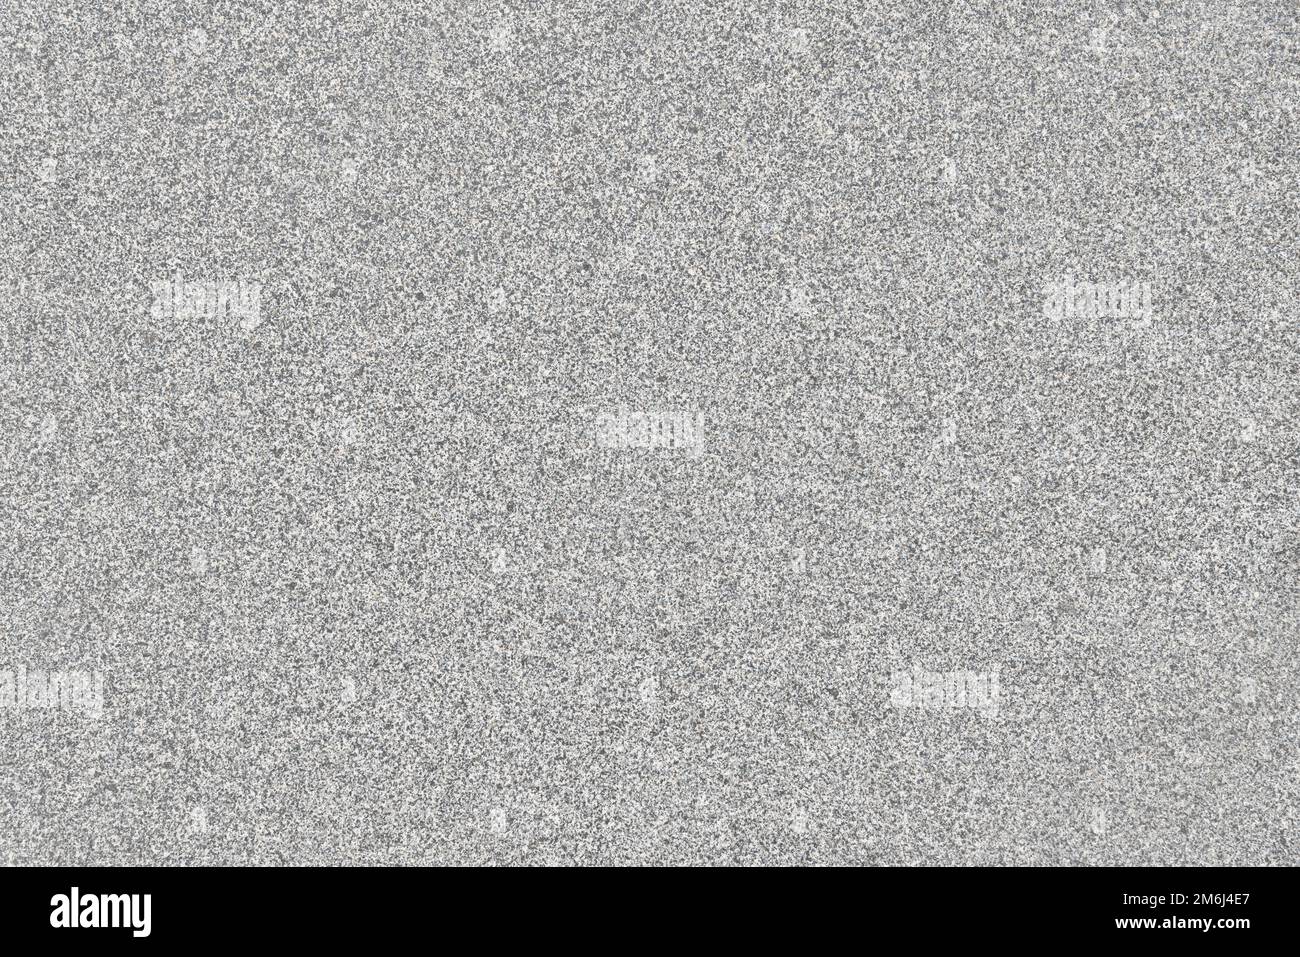 Fond de texture de surface en granit gris. Photographie haute résolution Banque D'Images